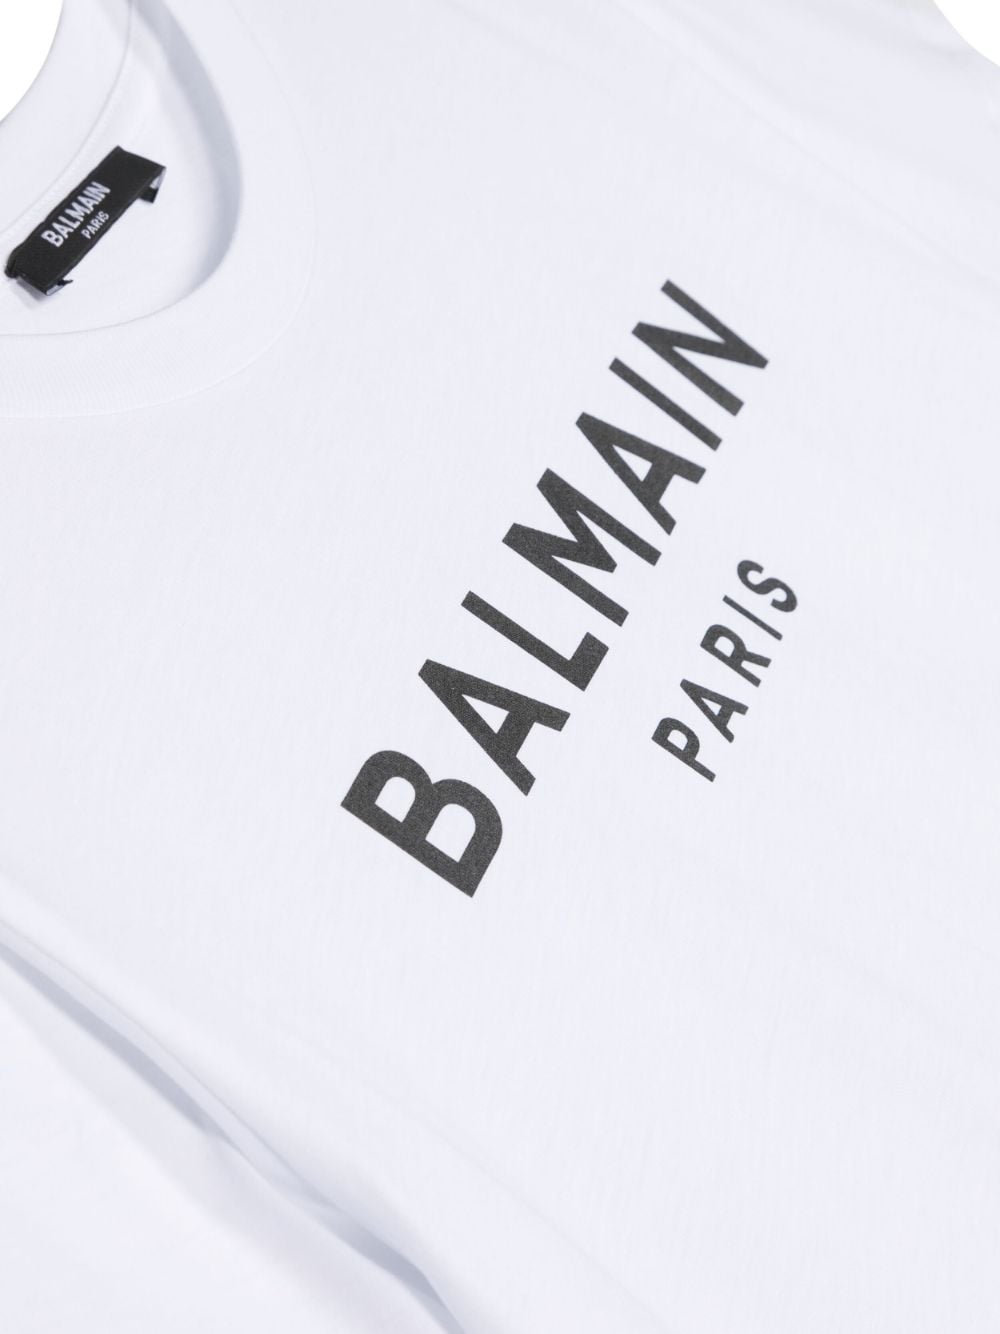 White cotton jersey boy BALMAIN t-shirt